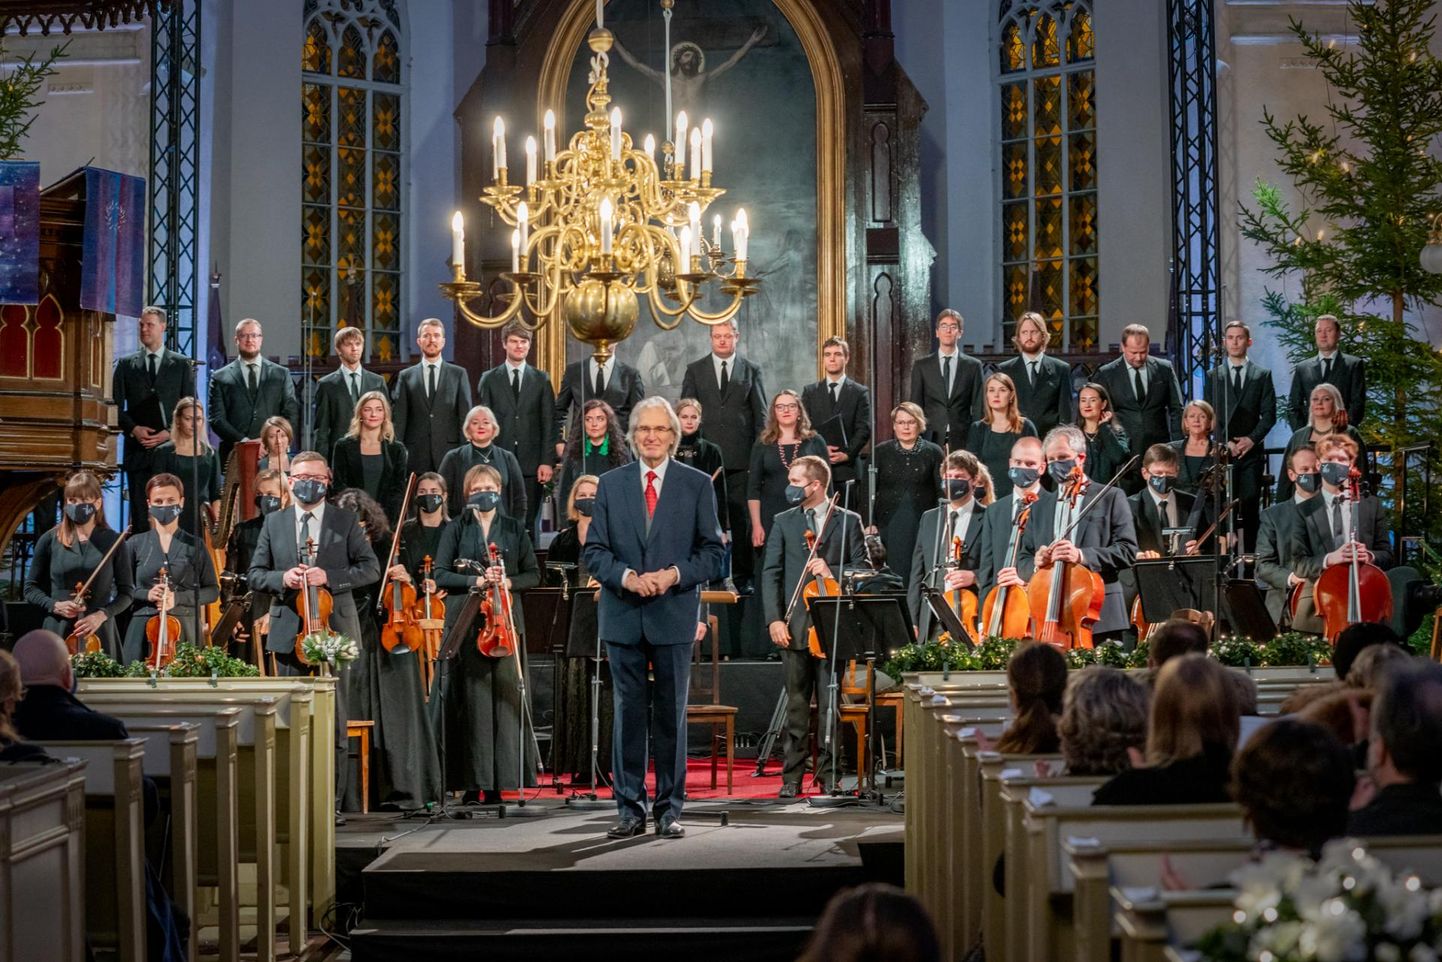 Dirigent Tõnu Kaljuste, Eesti filharmoonia kammerkoor ja Tallinna kammerorkester esitavad koos jõulukoraale.